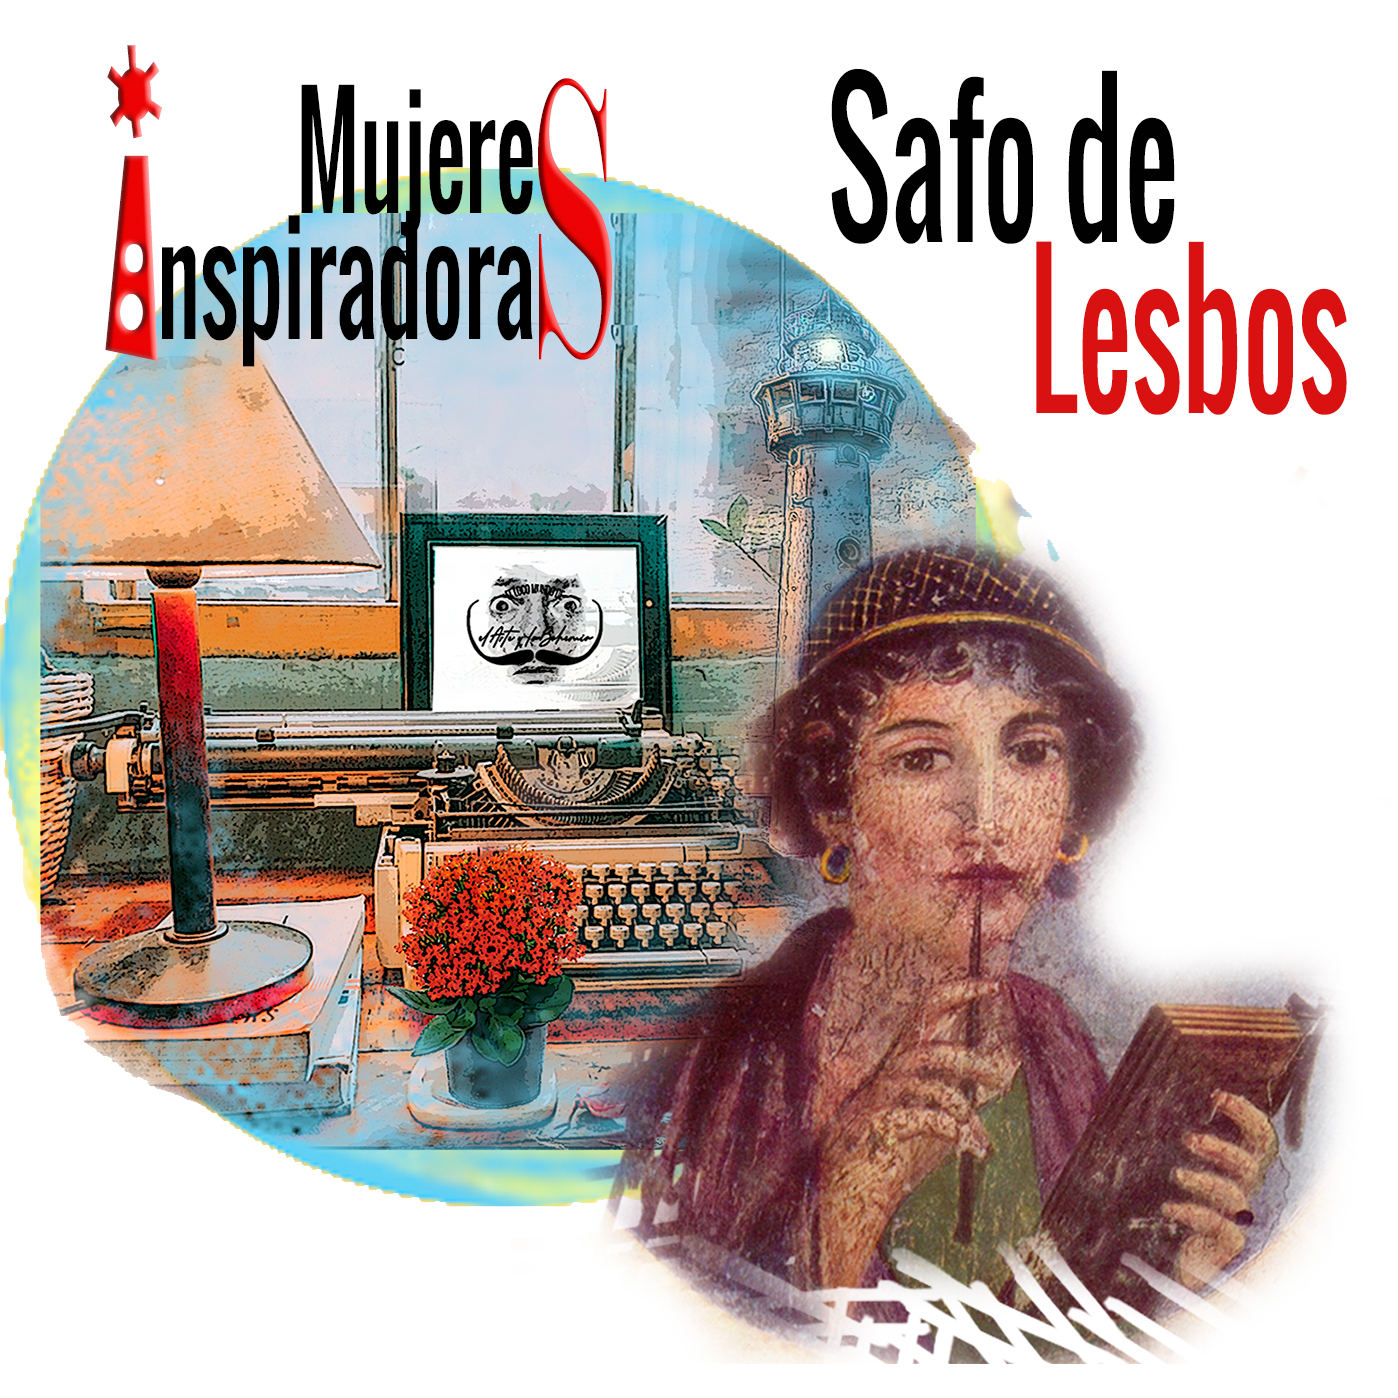 Mujeres inspiradoras Safo de Lesbos poeta, con fondo collage con máquina escribir y un faro coloreados. Loco Mundo Arte y Bohemia